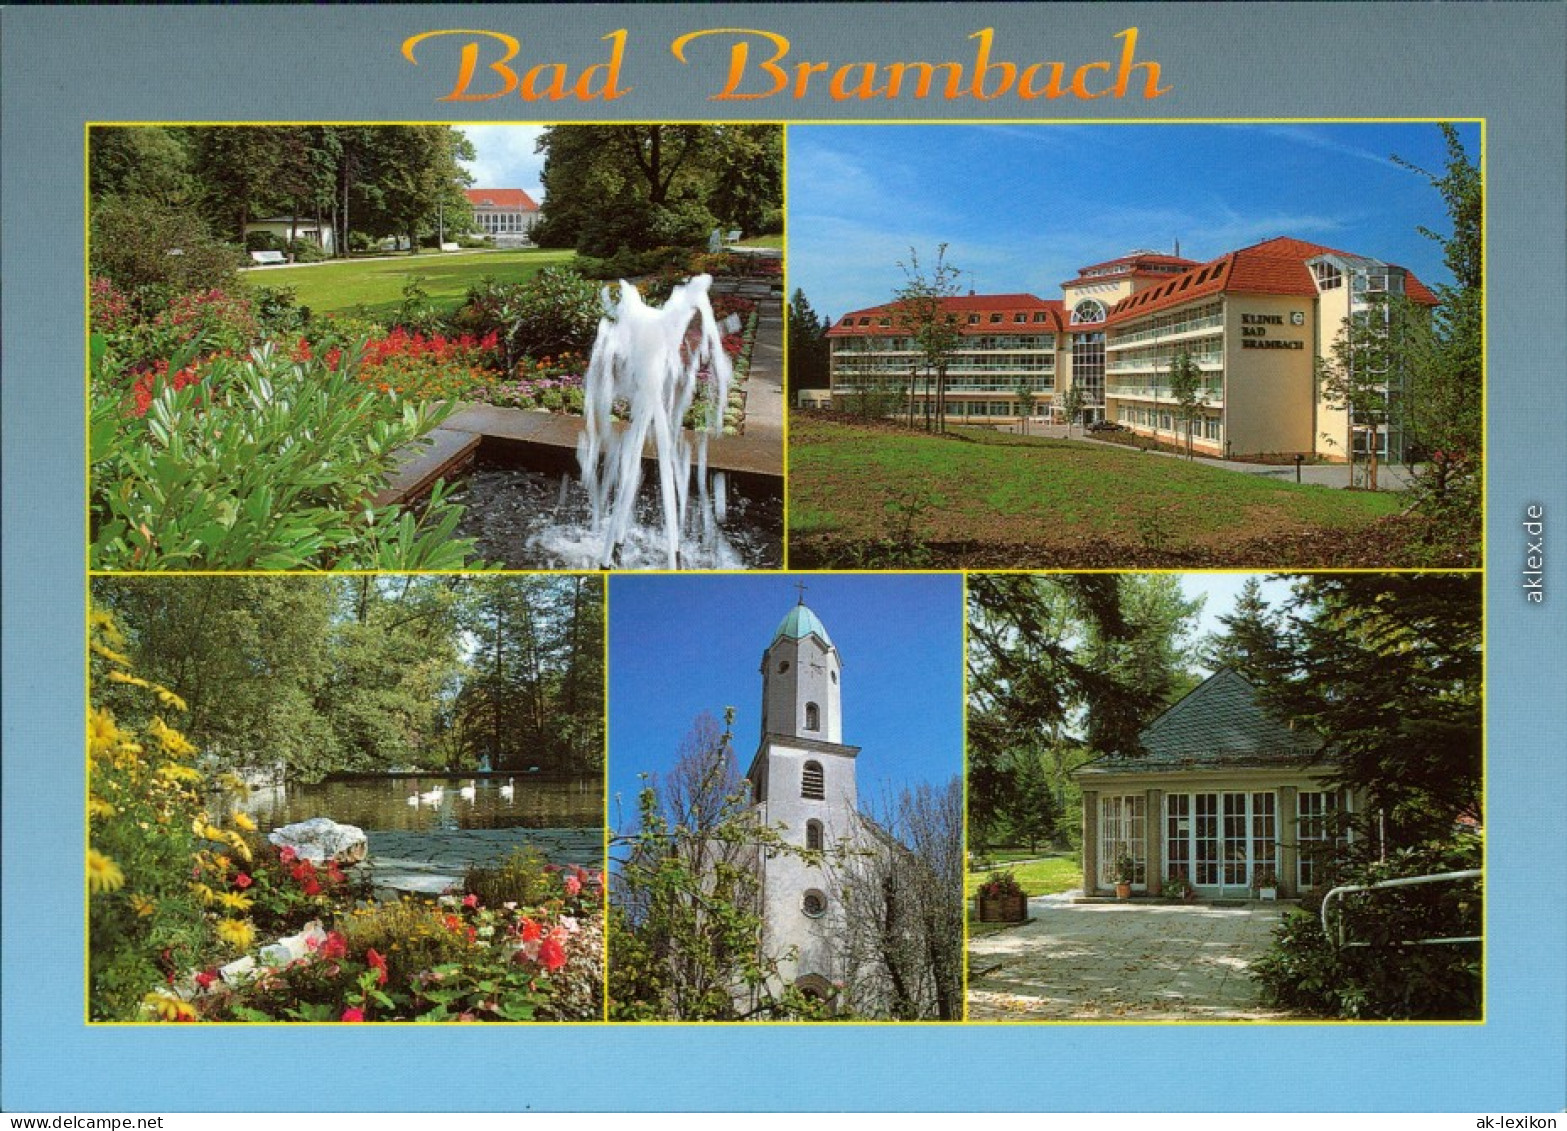 Bad Brambach Festhalle, Klinik, Kurpark, Michaelis Kirche, Schiller-Quelle 2002 - Bad Brambach